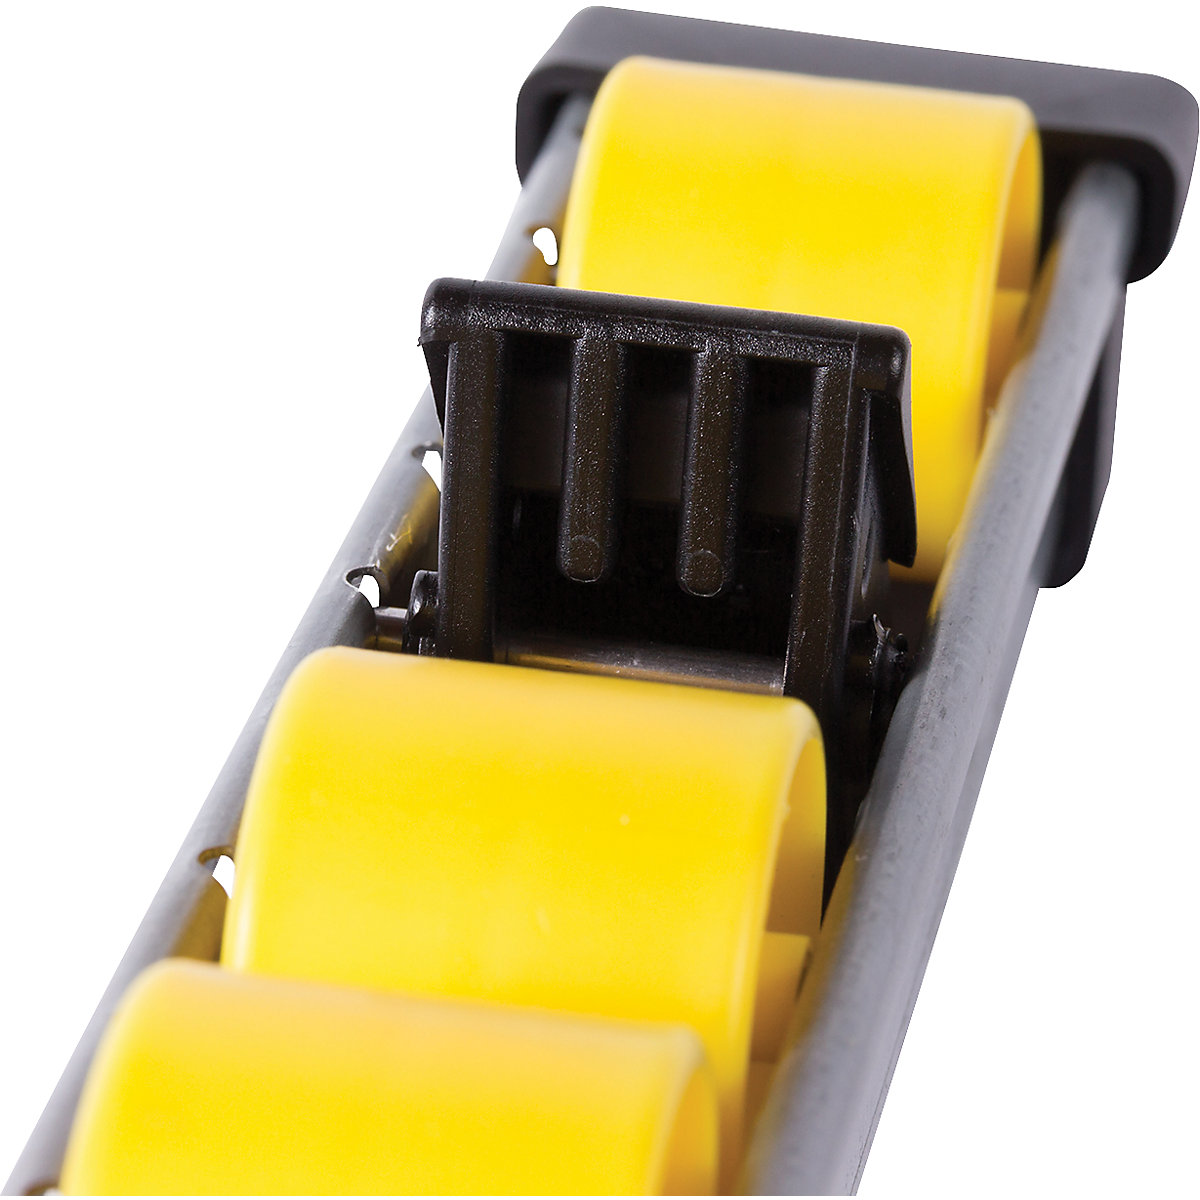 Bloqueio de deslize traseiro com eixo de aço para guias de rolos, embalagem de 10 unid. (Imagem do produto 12)-11